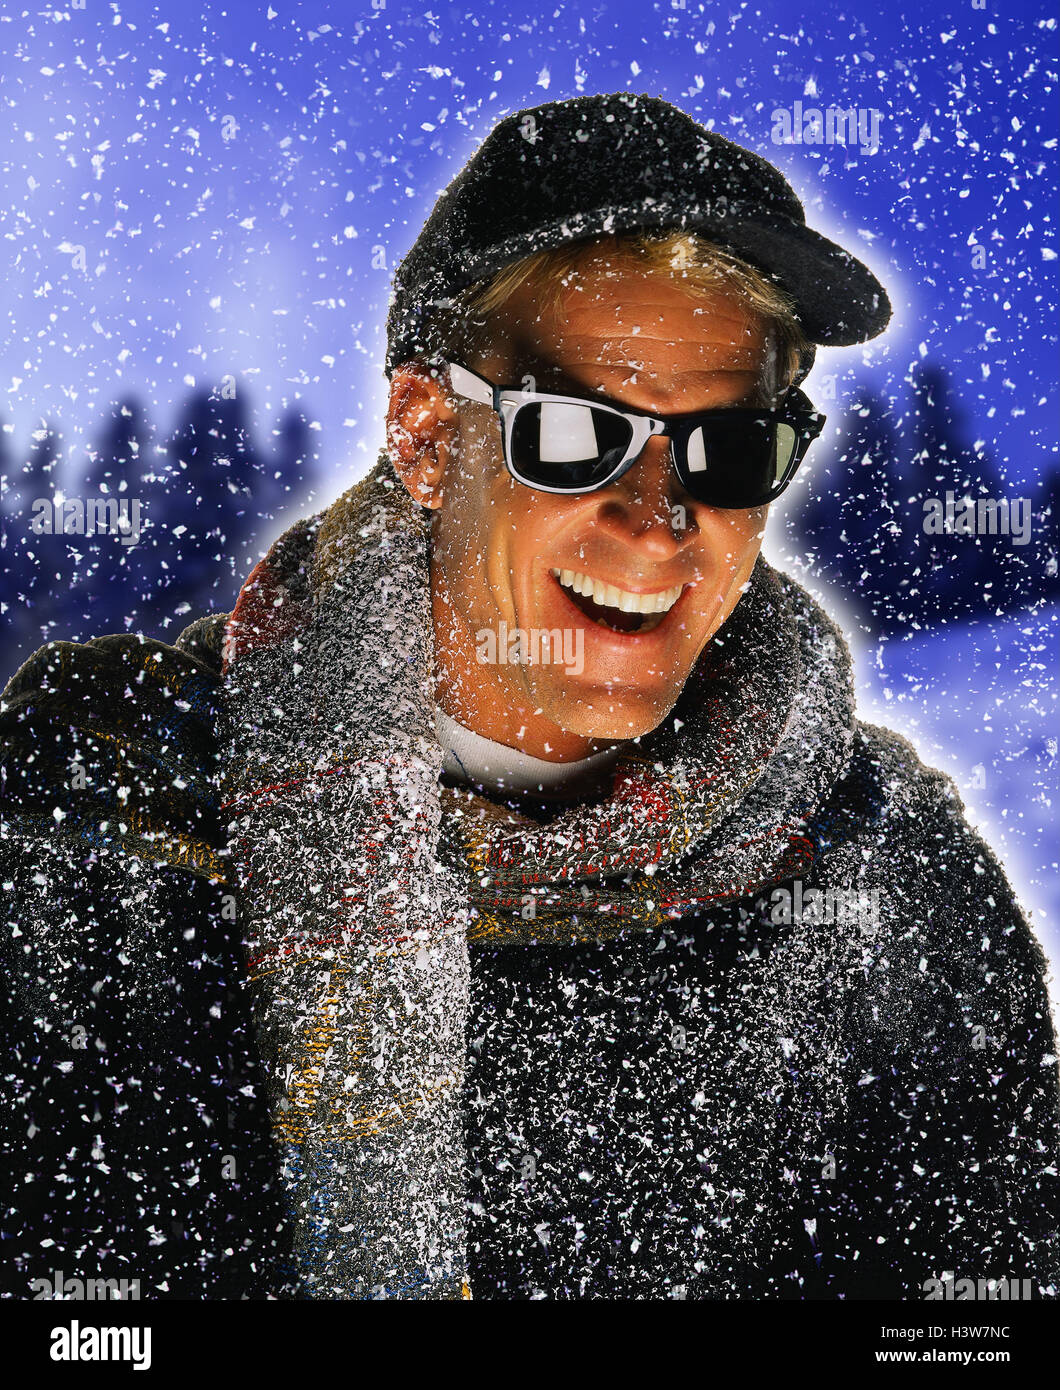 L'uomo, occhiali da sole, pullover, cappuccio, sciarpa, nevicata, ridere,  ritratto, uomini, composizione paesaggio invernale, inverno legno, inverno,  la neve, fiocchi di neve, freddo, felice, allegramente, studio, tagliate  Foto stock - Alamy